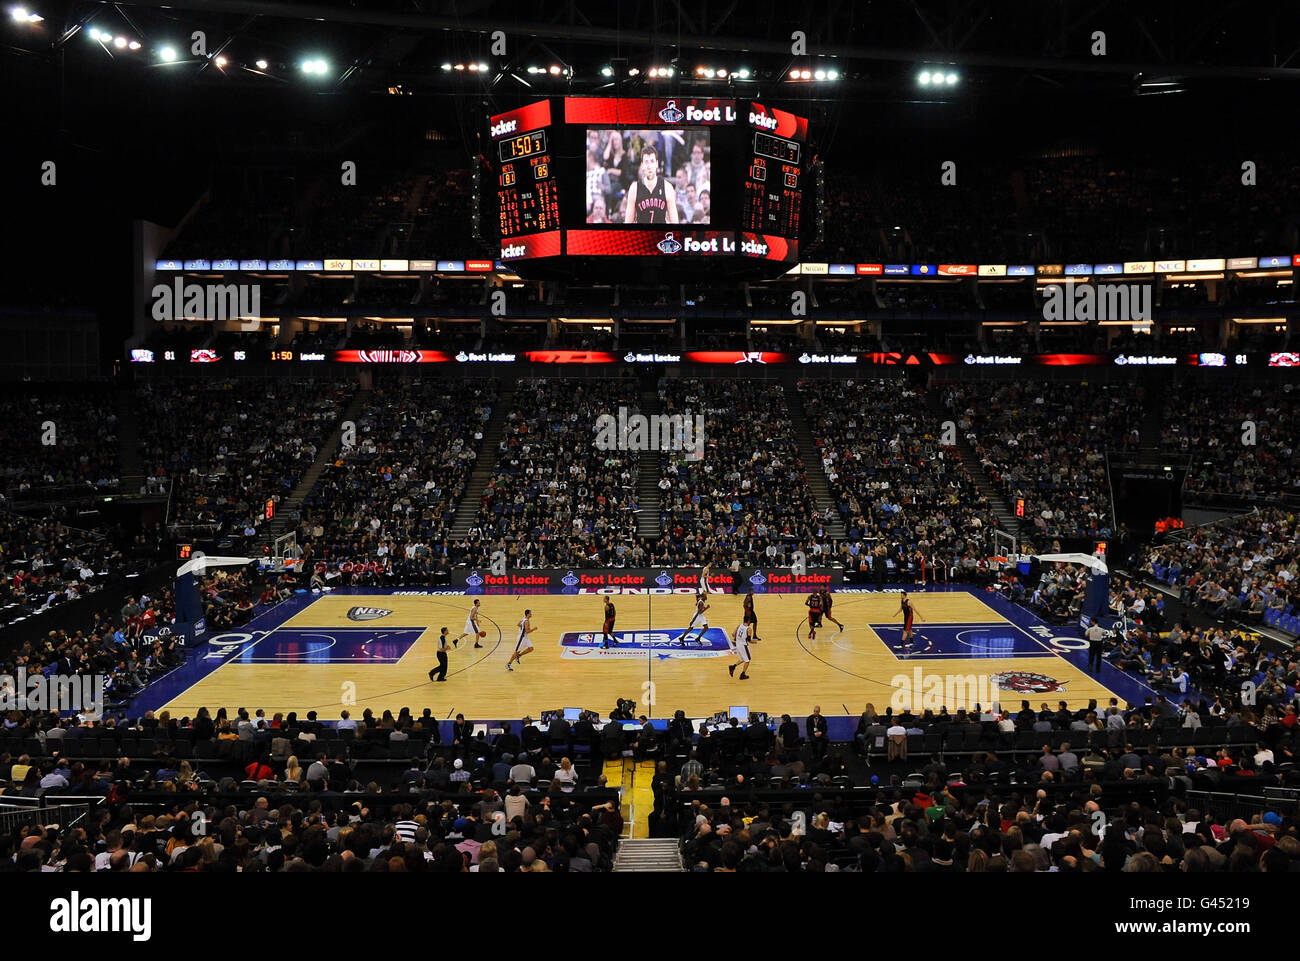 Une vue d'ensemble pendant le match de la NBA à l'O2 Arena, Londres. Banque D'Images